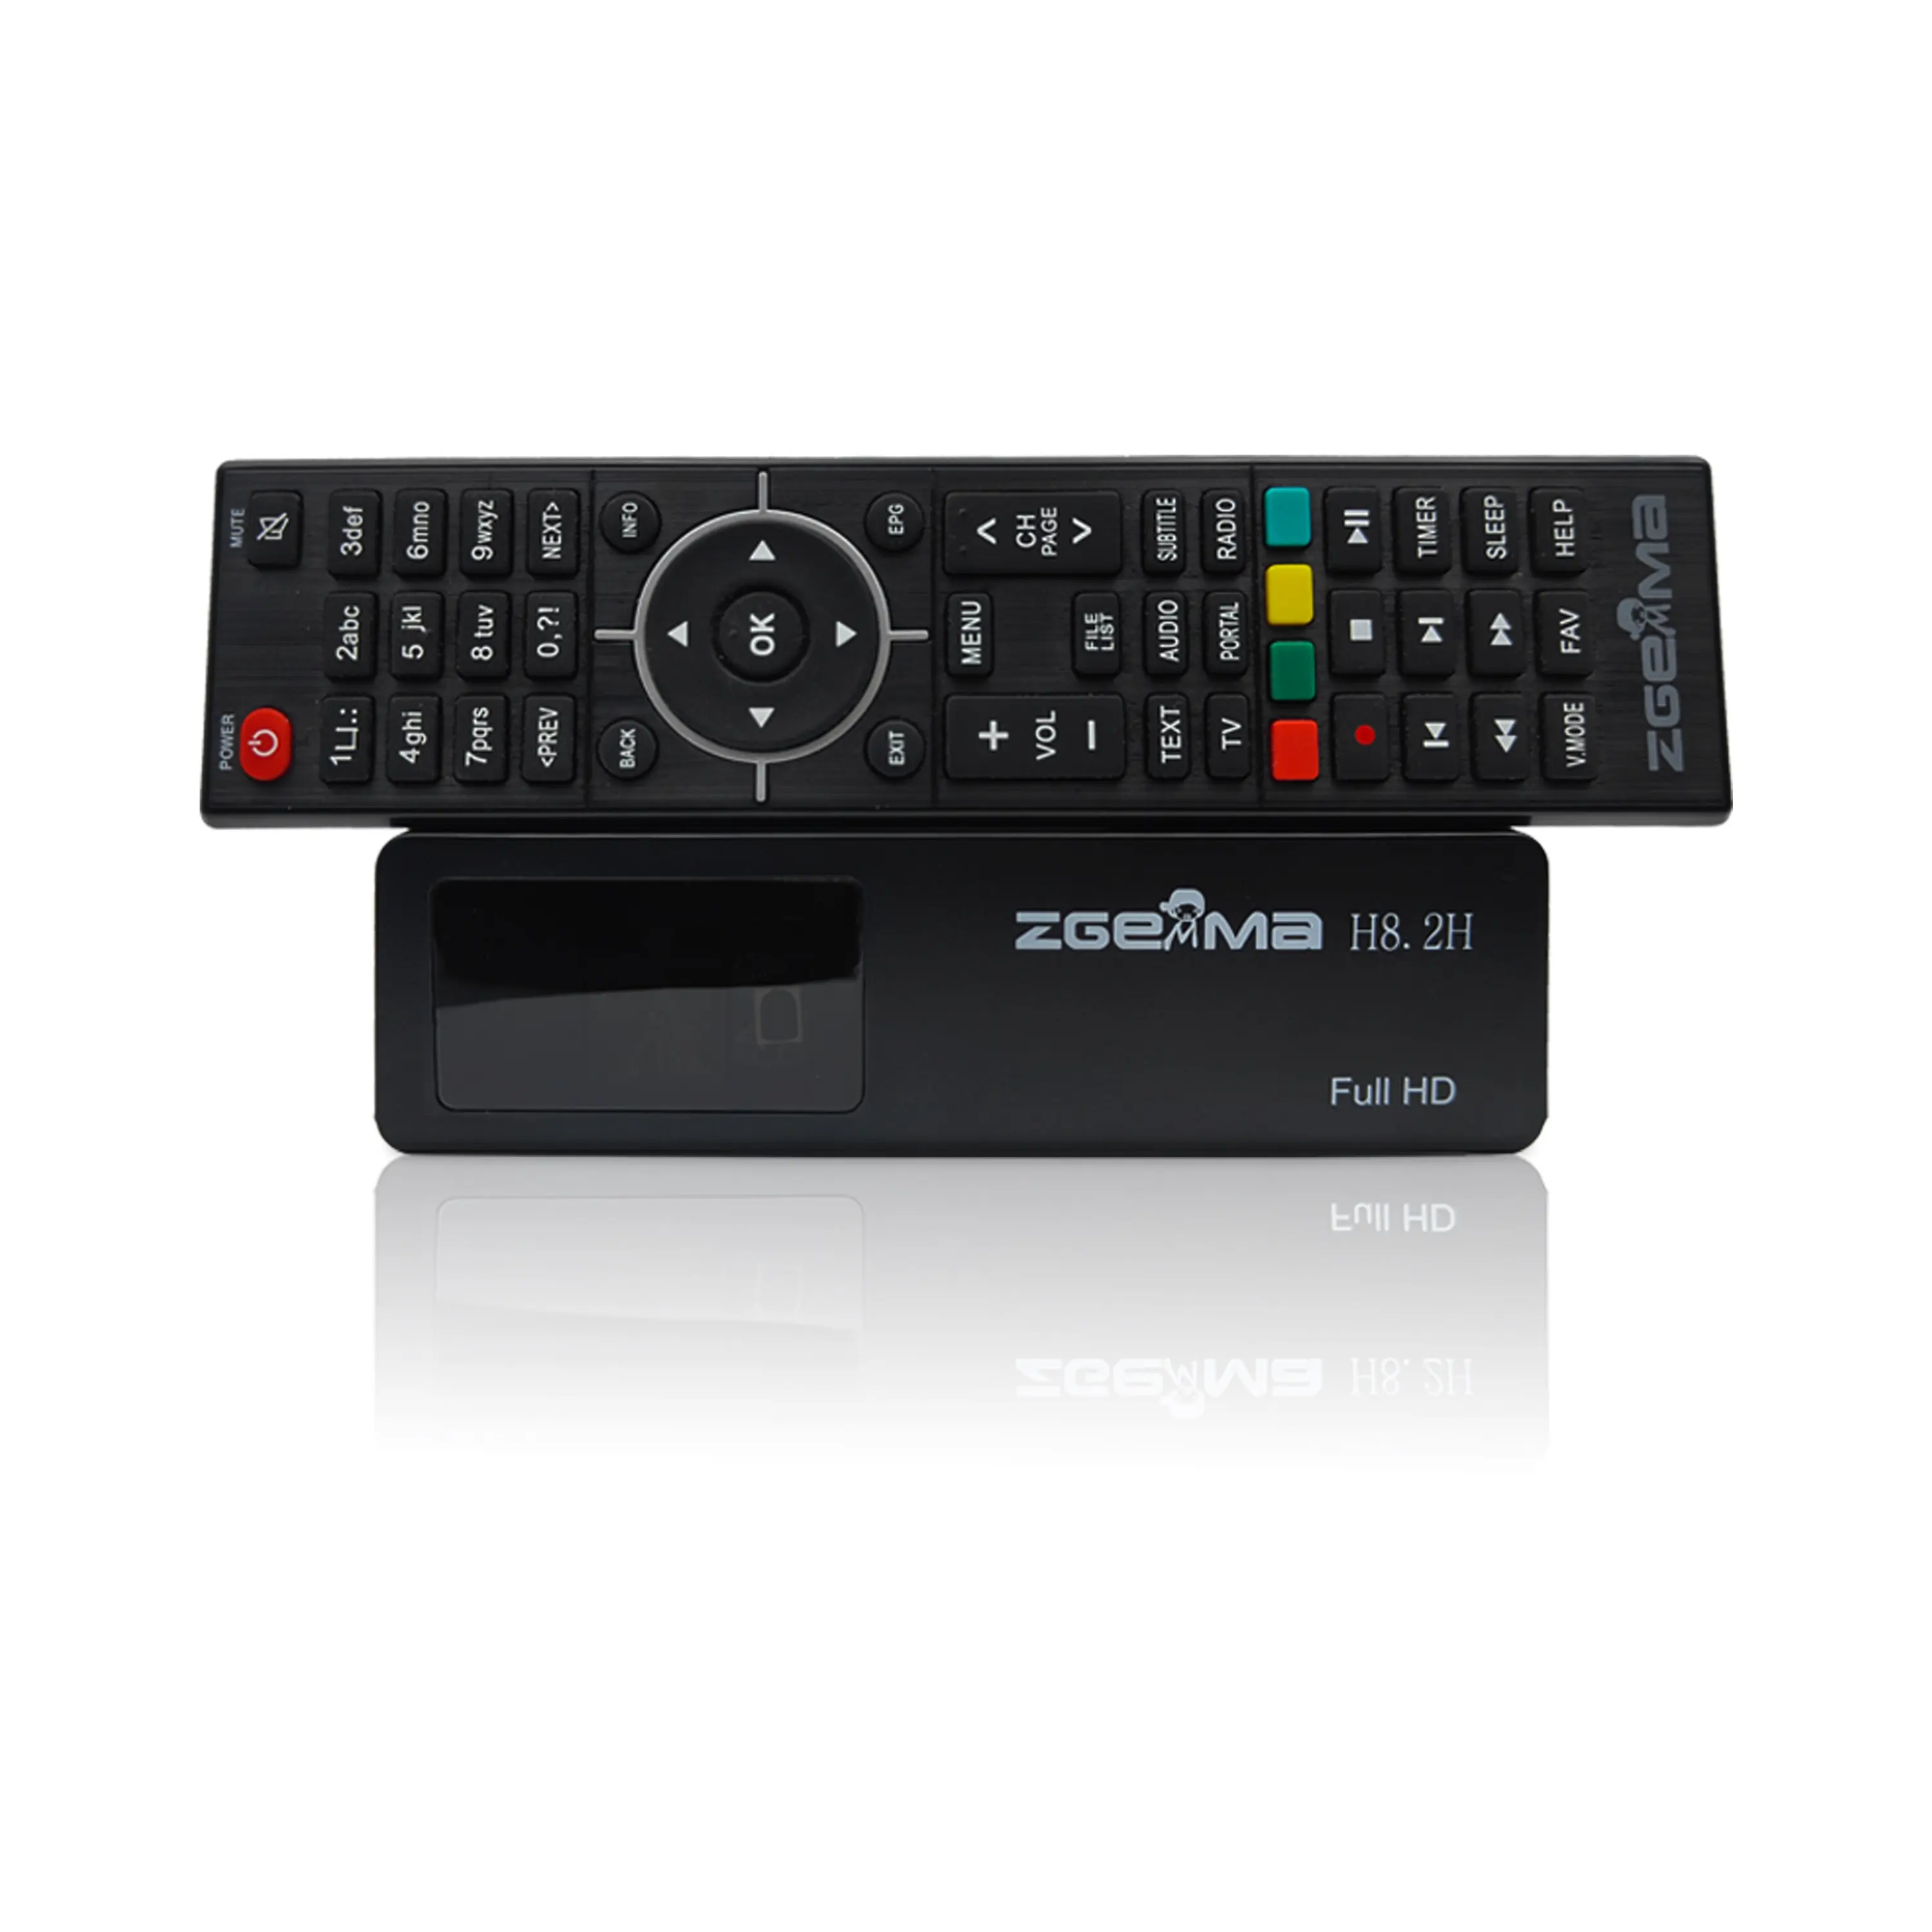 جهاز استقبال تلفزيون قمر صناعي 1080p H.265 Enigm2 Linux OS DVB S2X + DVB T2/C جهاز موالفة كومبو صندوق تلفزيون آي بي تي في و جهاز فك الترميز ZGEMMA H8.2H